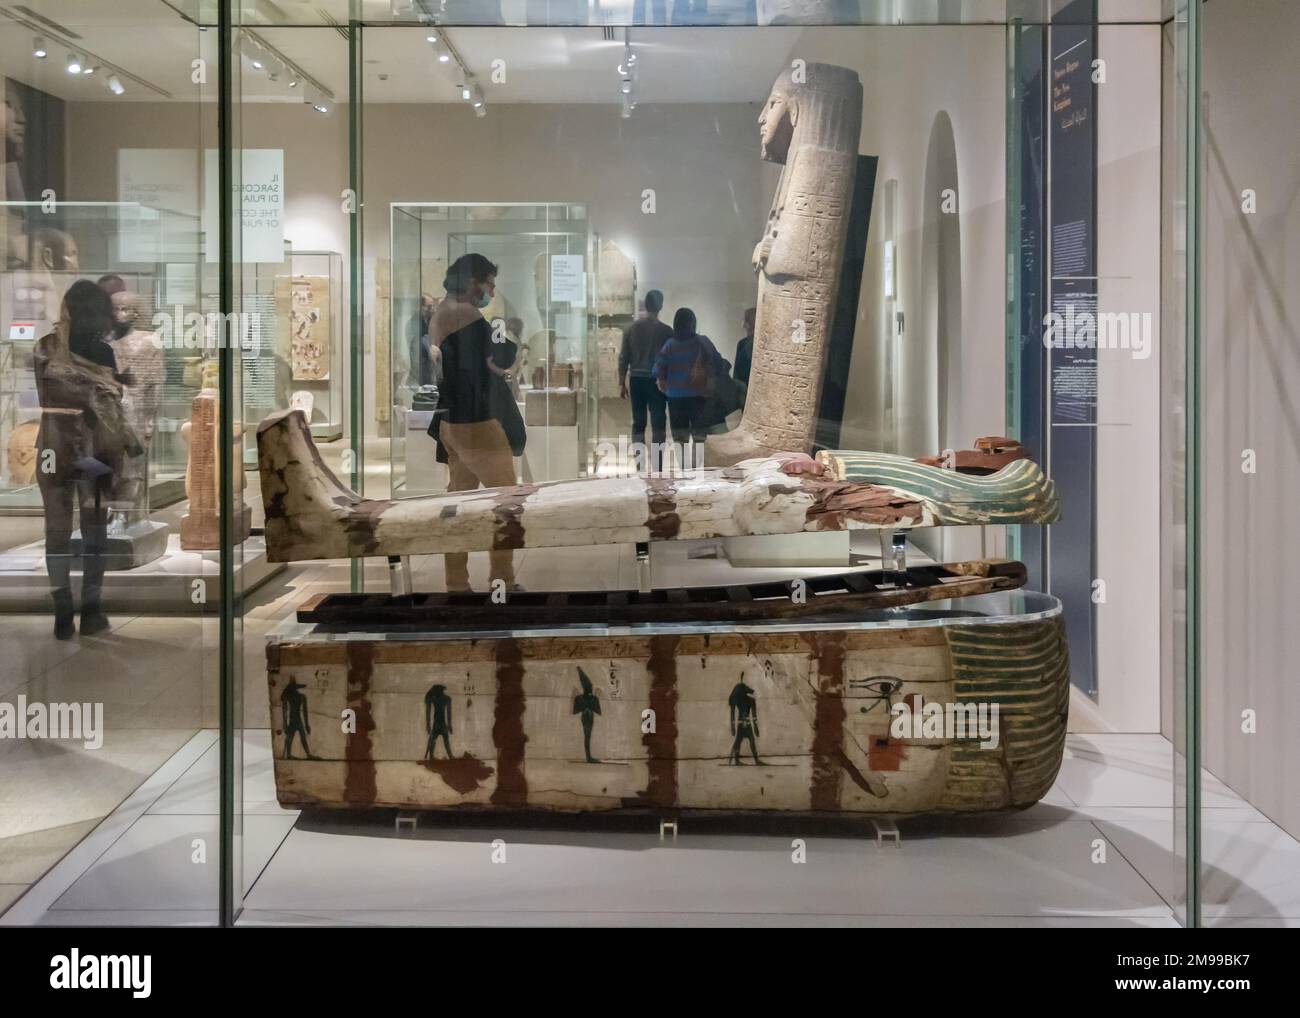 Sarcophage en bois égyptien antique - le cercueil de Puia vers 1800BC - nécropole de Thèbes - Musée égyptien Turin, région Piémont, Italie Banque D'Images